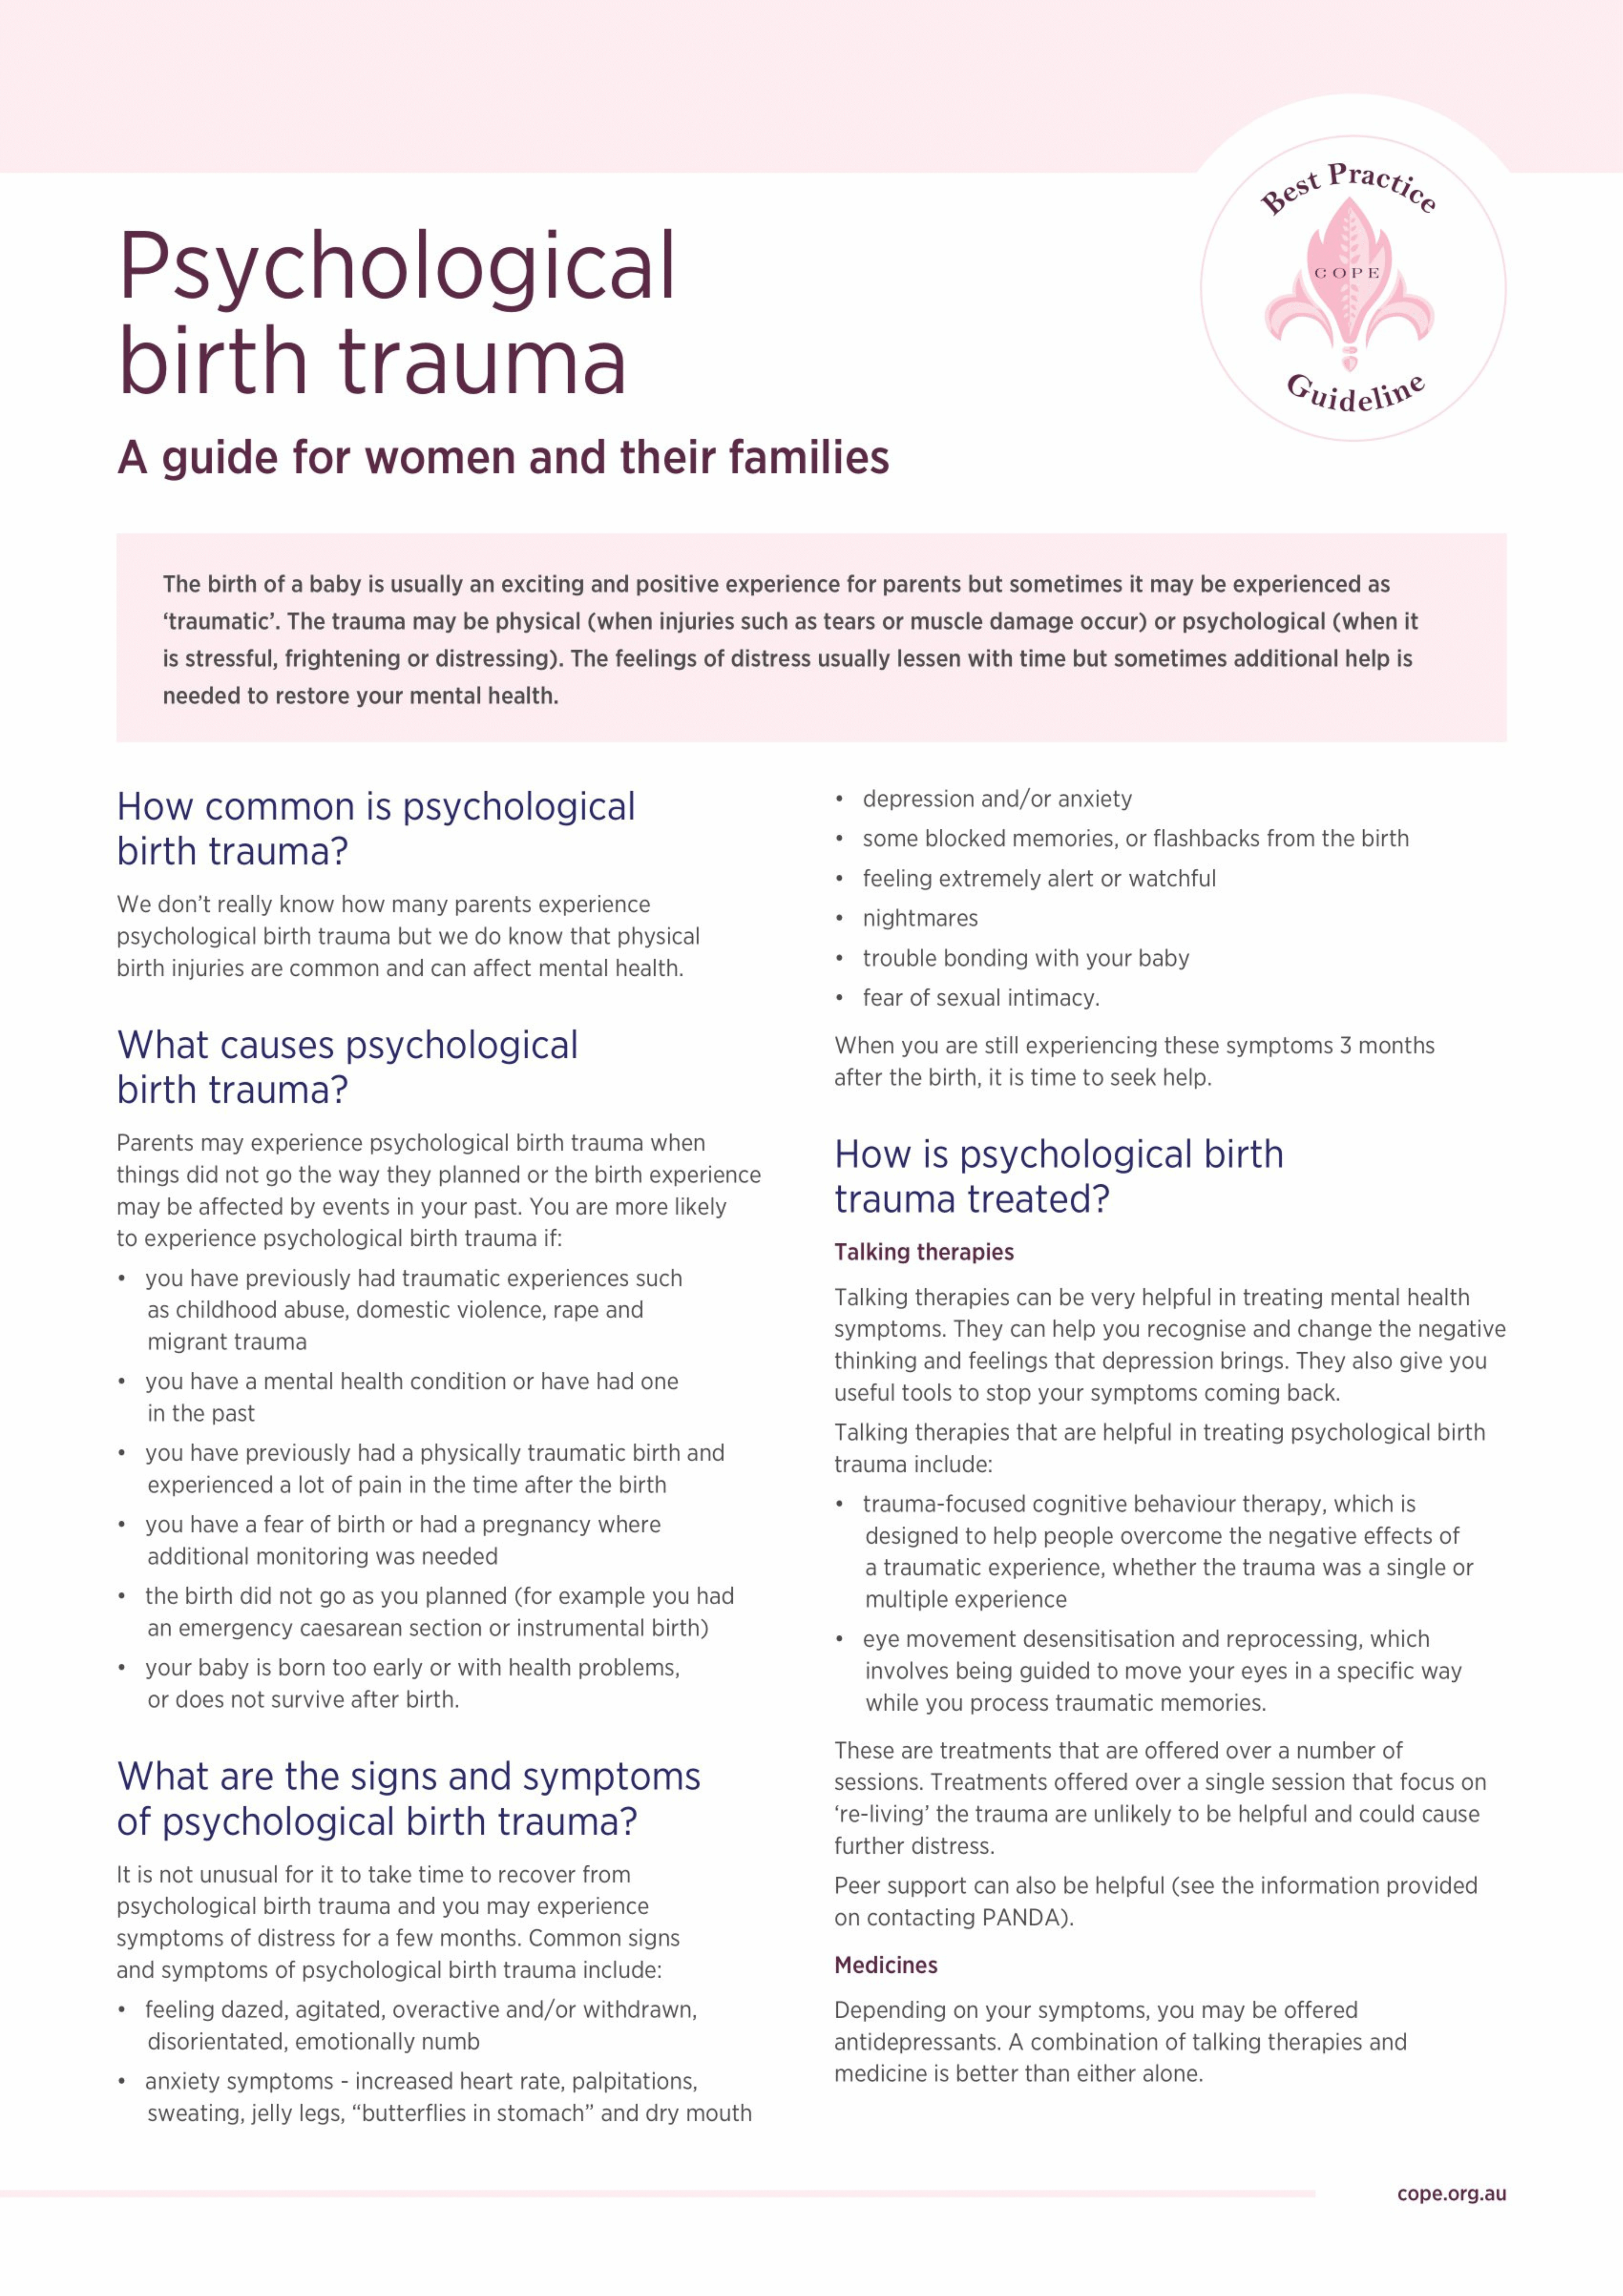 Consumer factsheet on psychological birth trauma